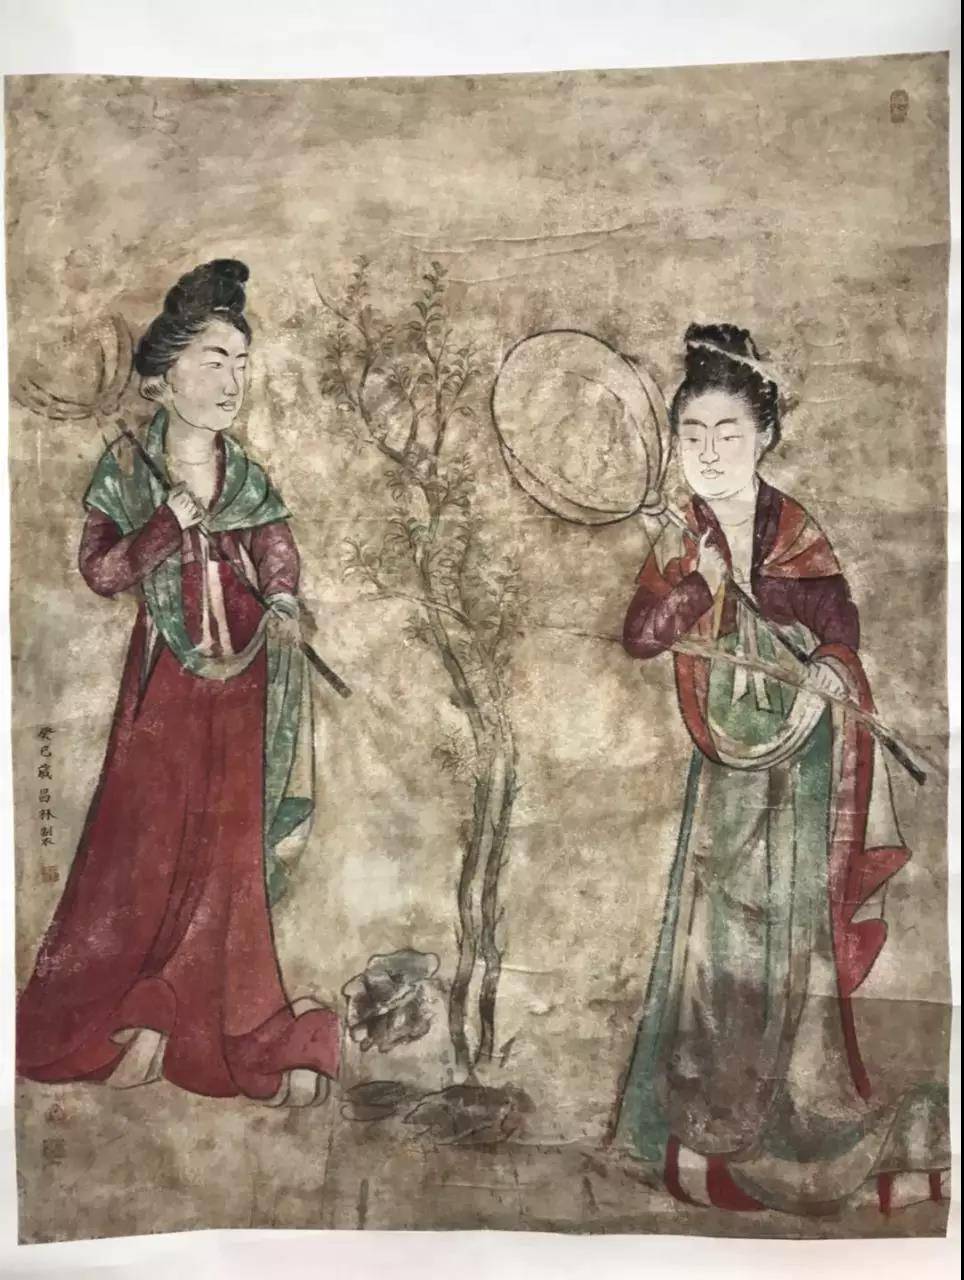 陕西历史博物馆 ——“第三届‘一带一路’壁画论坛-传统壁画的复制与修复研究”暨作品展